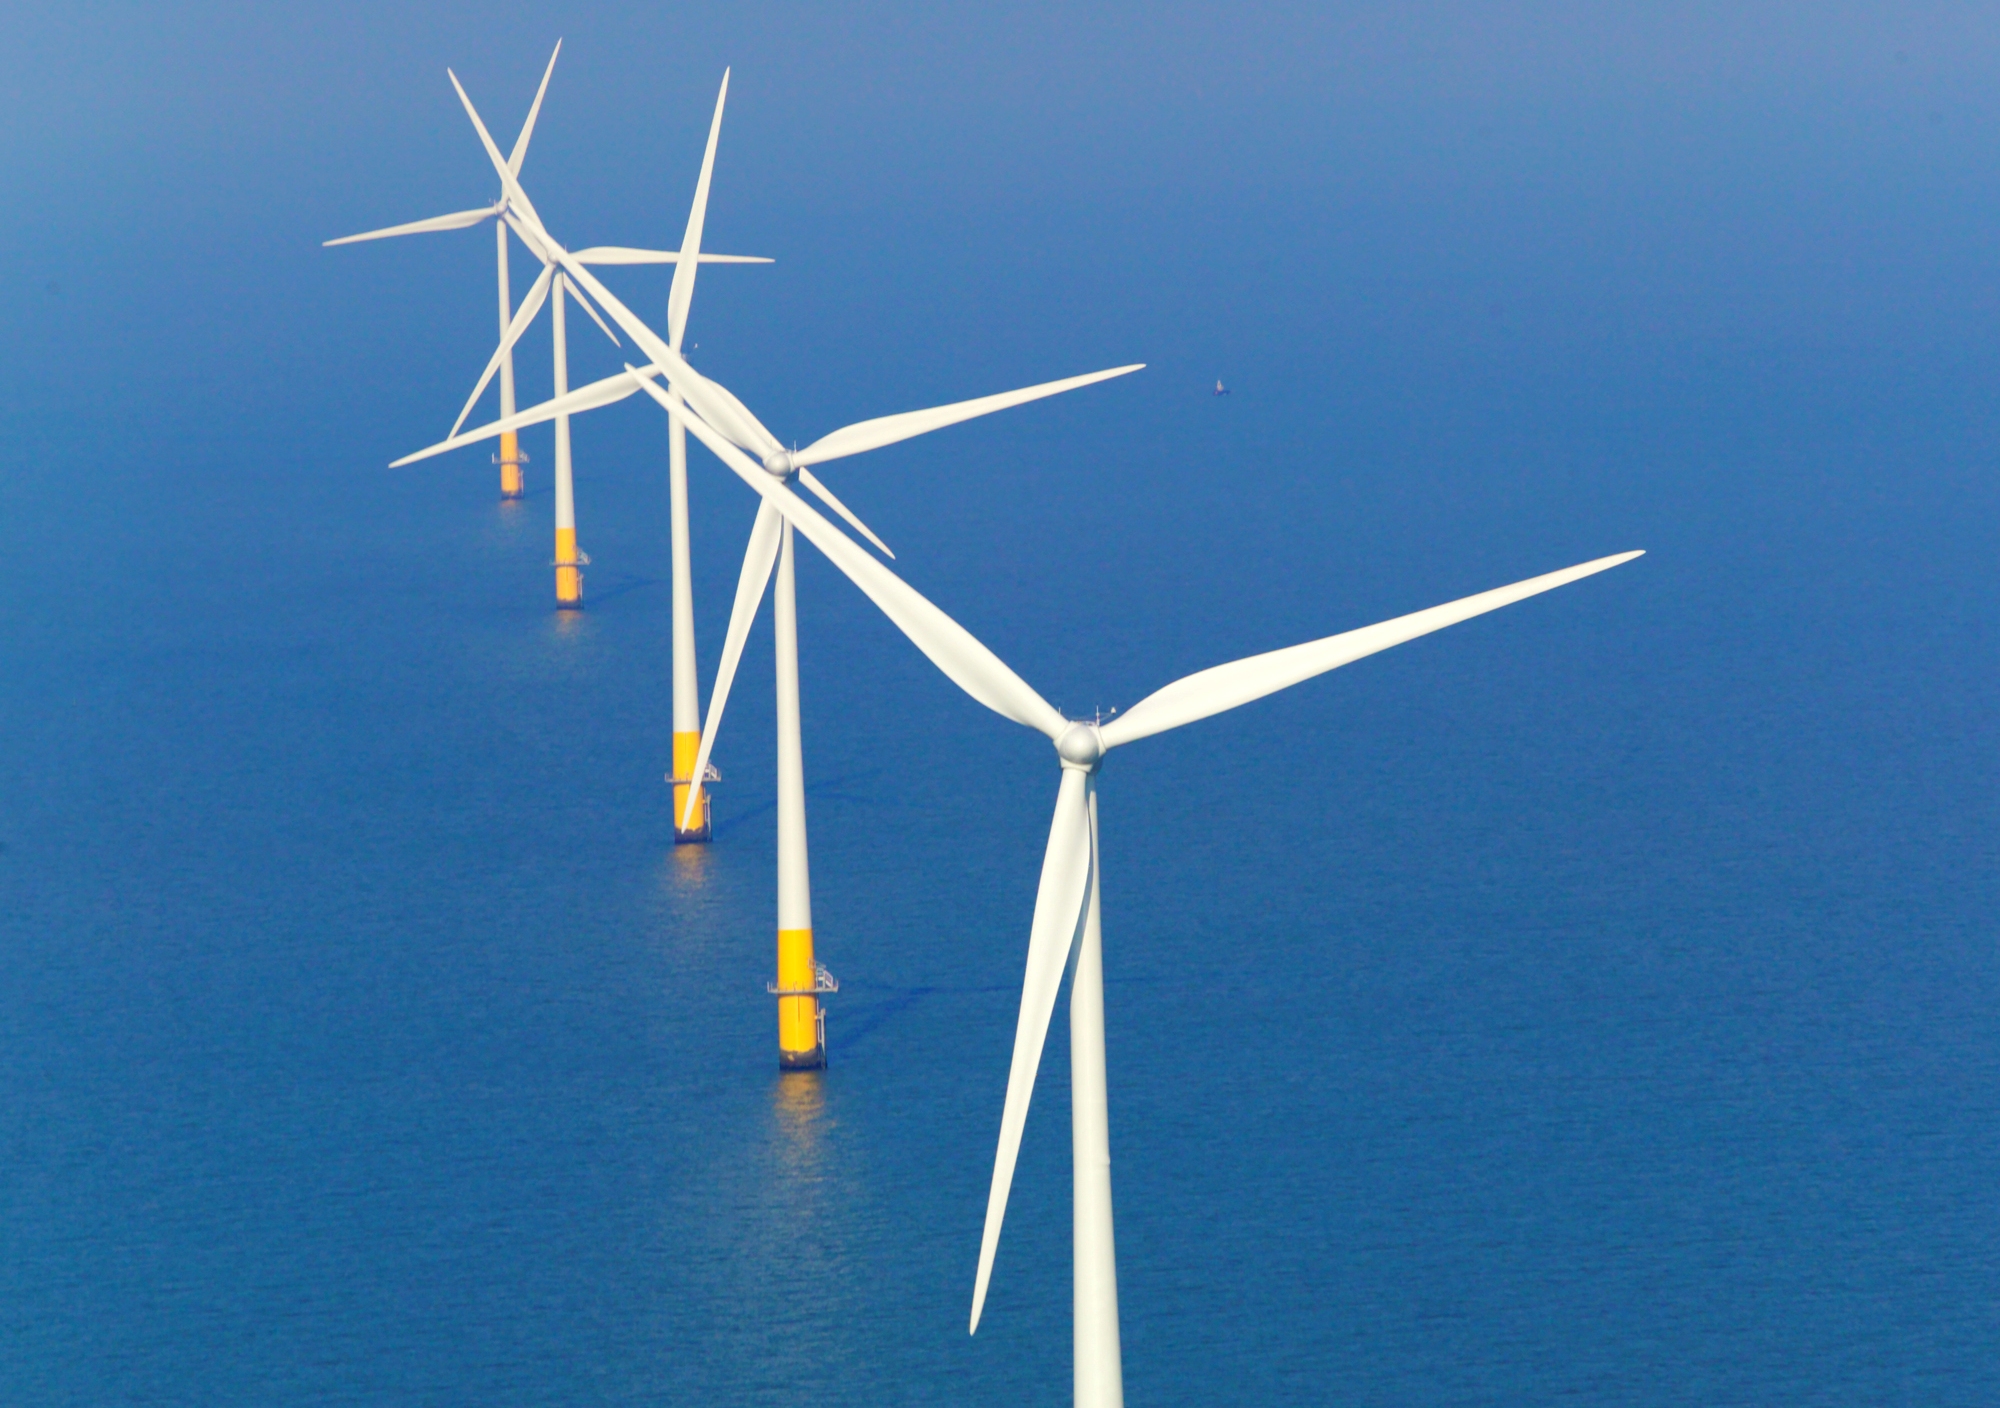 UK's Wind Power Breaks Record by Generating 6GW